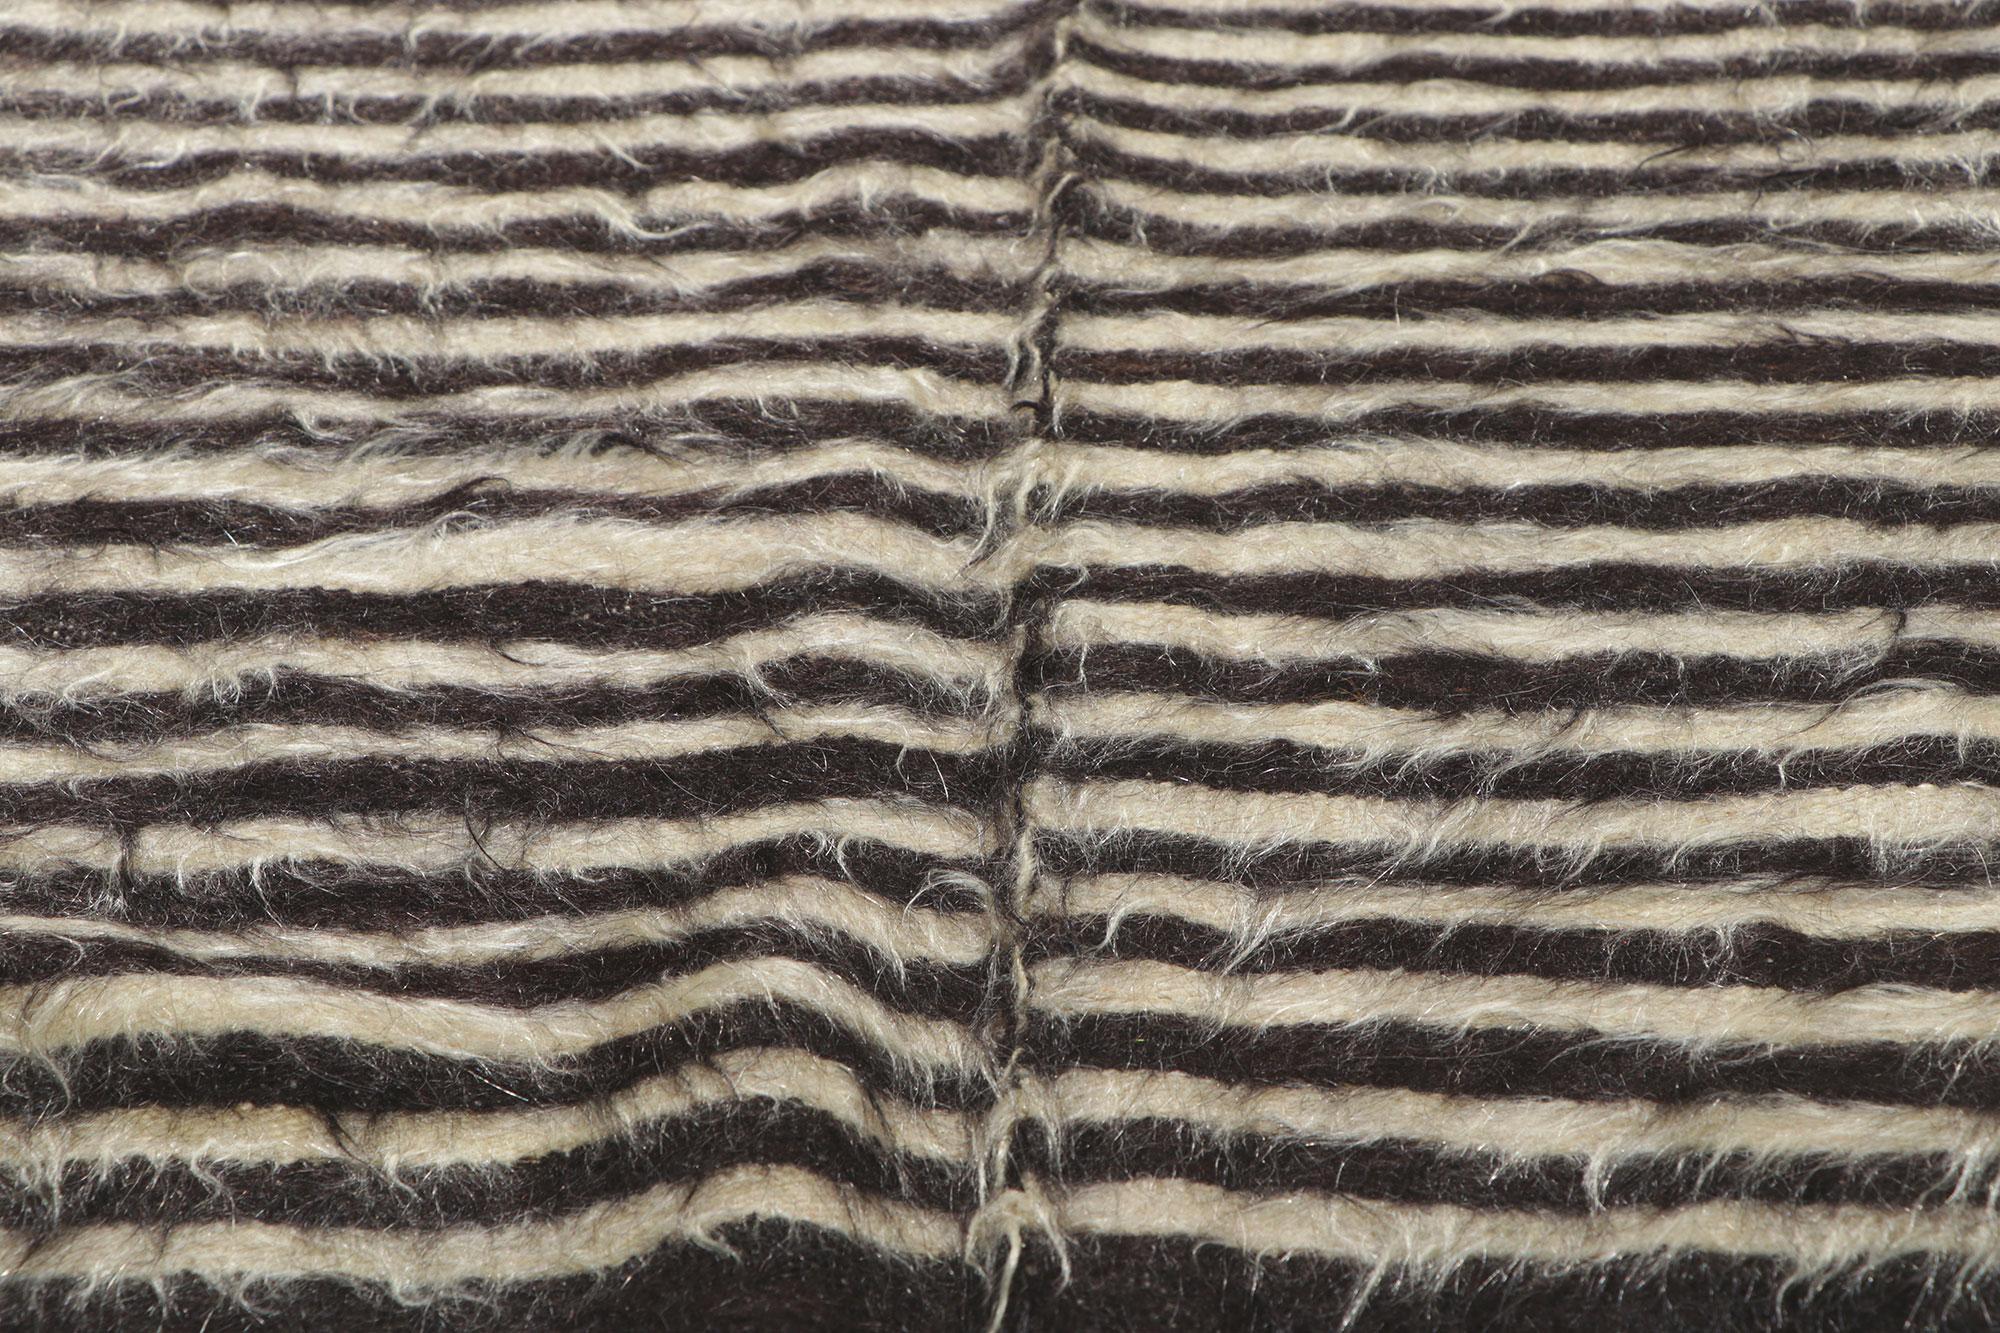 20th Century Vintage Turkish Angora Wool Blanket Kilim Rug For Sale